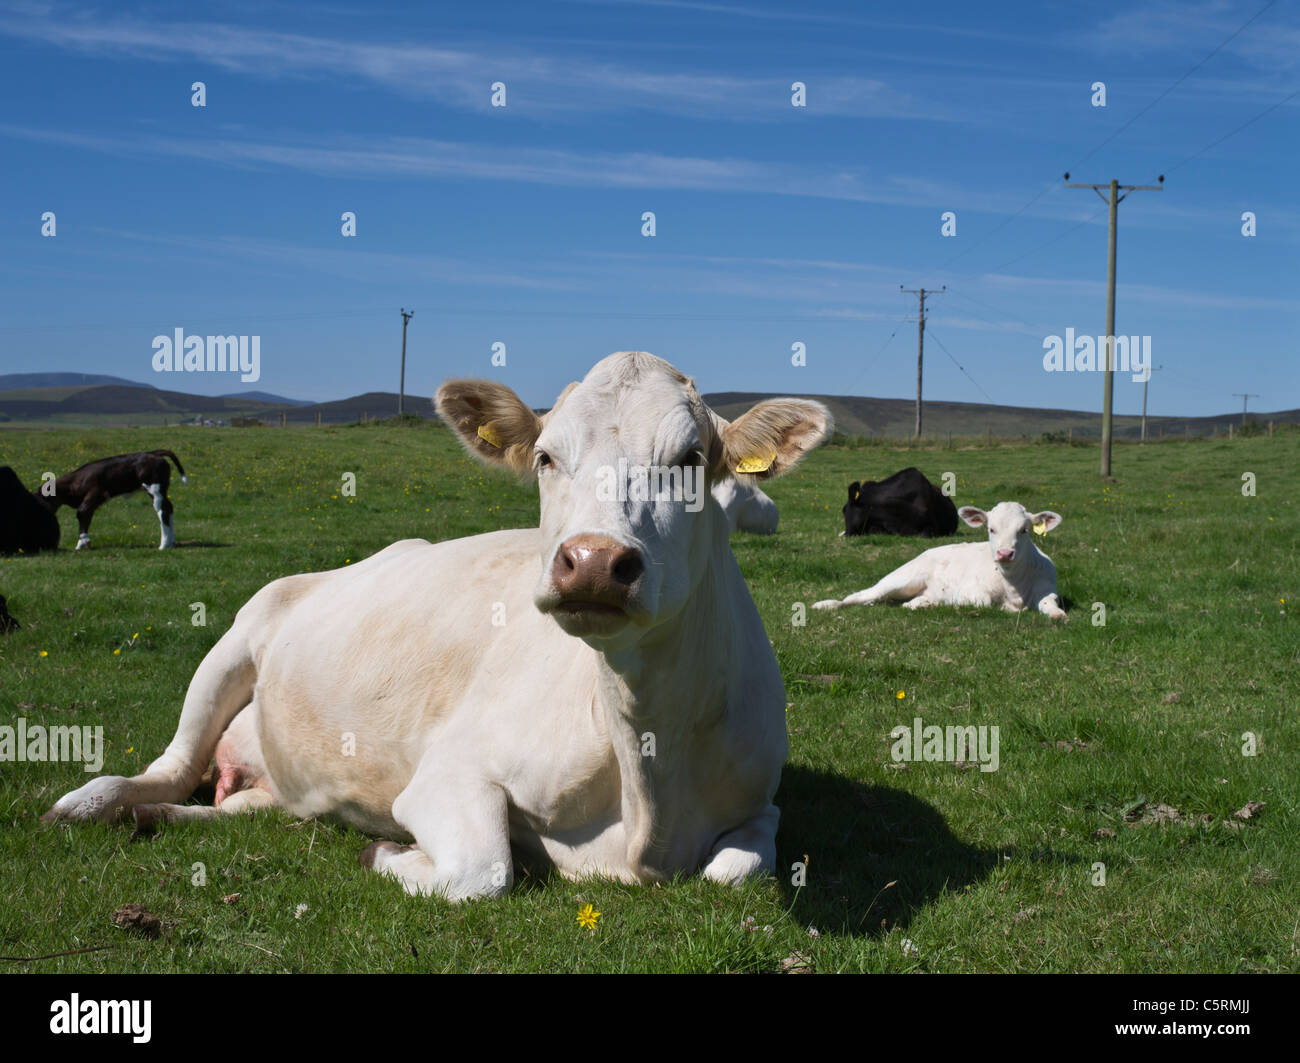 dh Scozia bovini bovini BOVINI ANIMALI Regno Unito British Cow vitello cross posa allevamento bestiame seduto in giù campo Sit Foto Stock